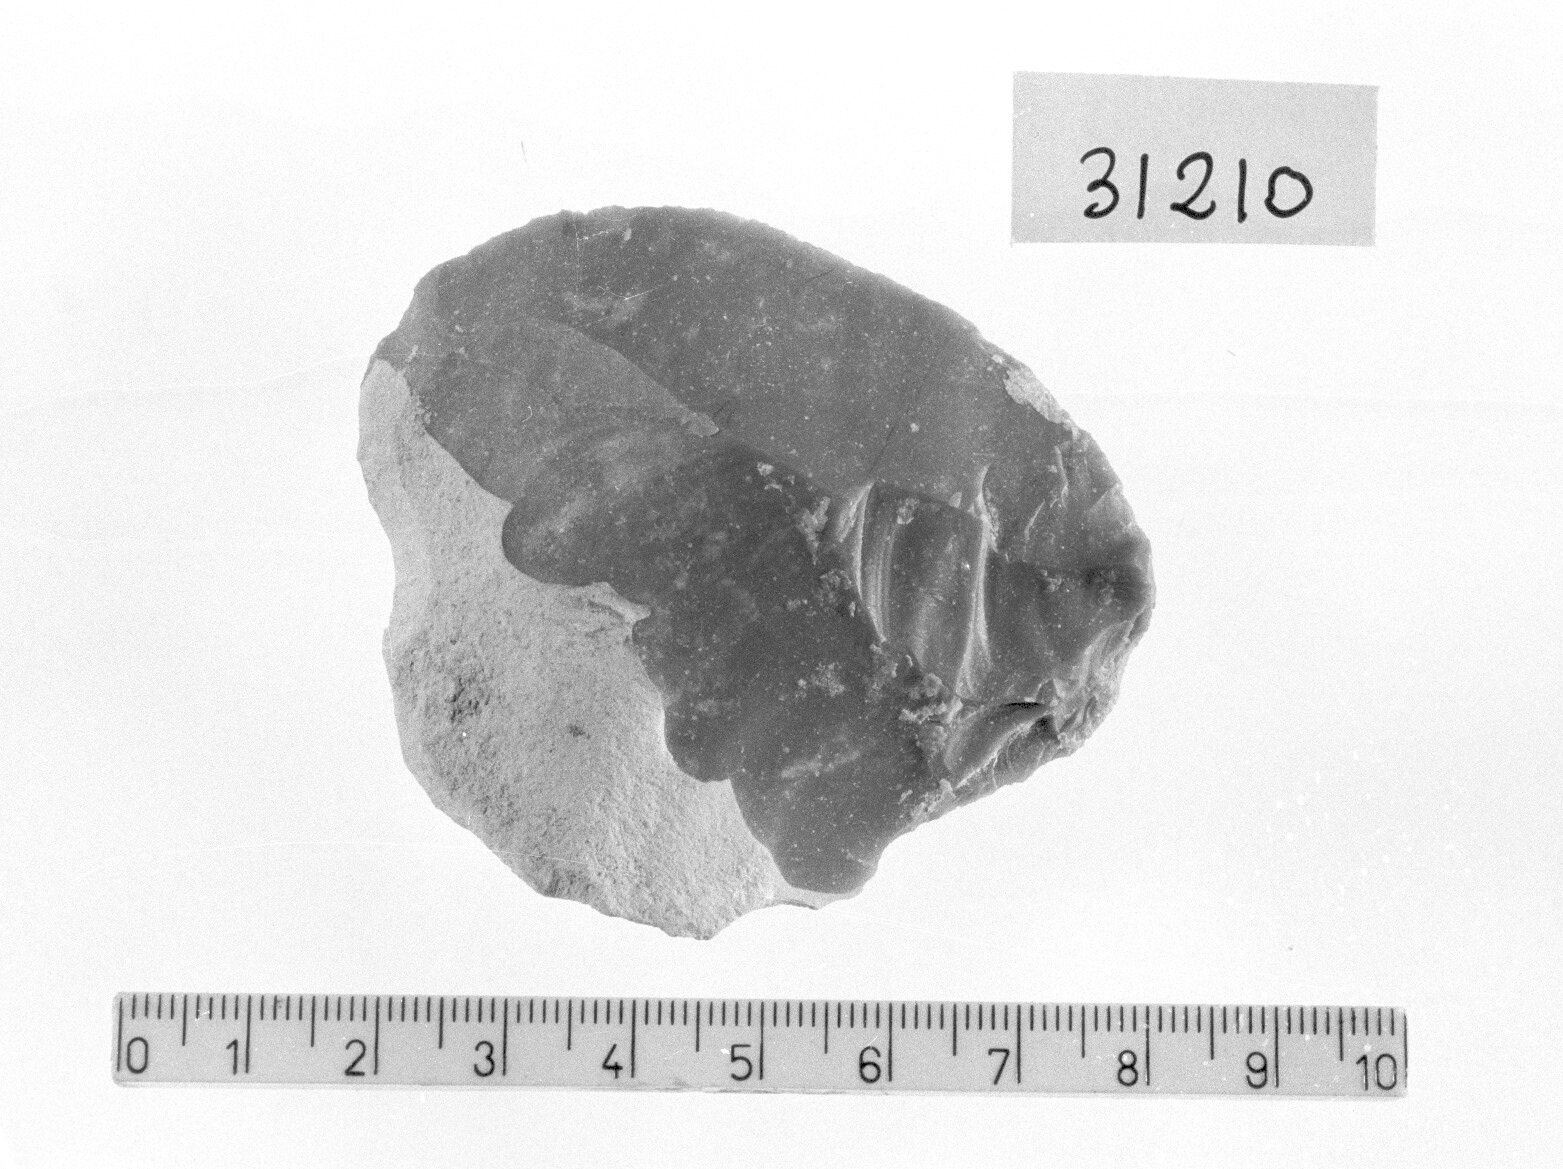 grattatoio a muso ogivale - Gravettiano (Paleolitico superiore)